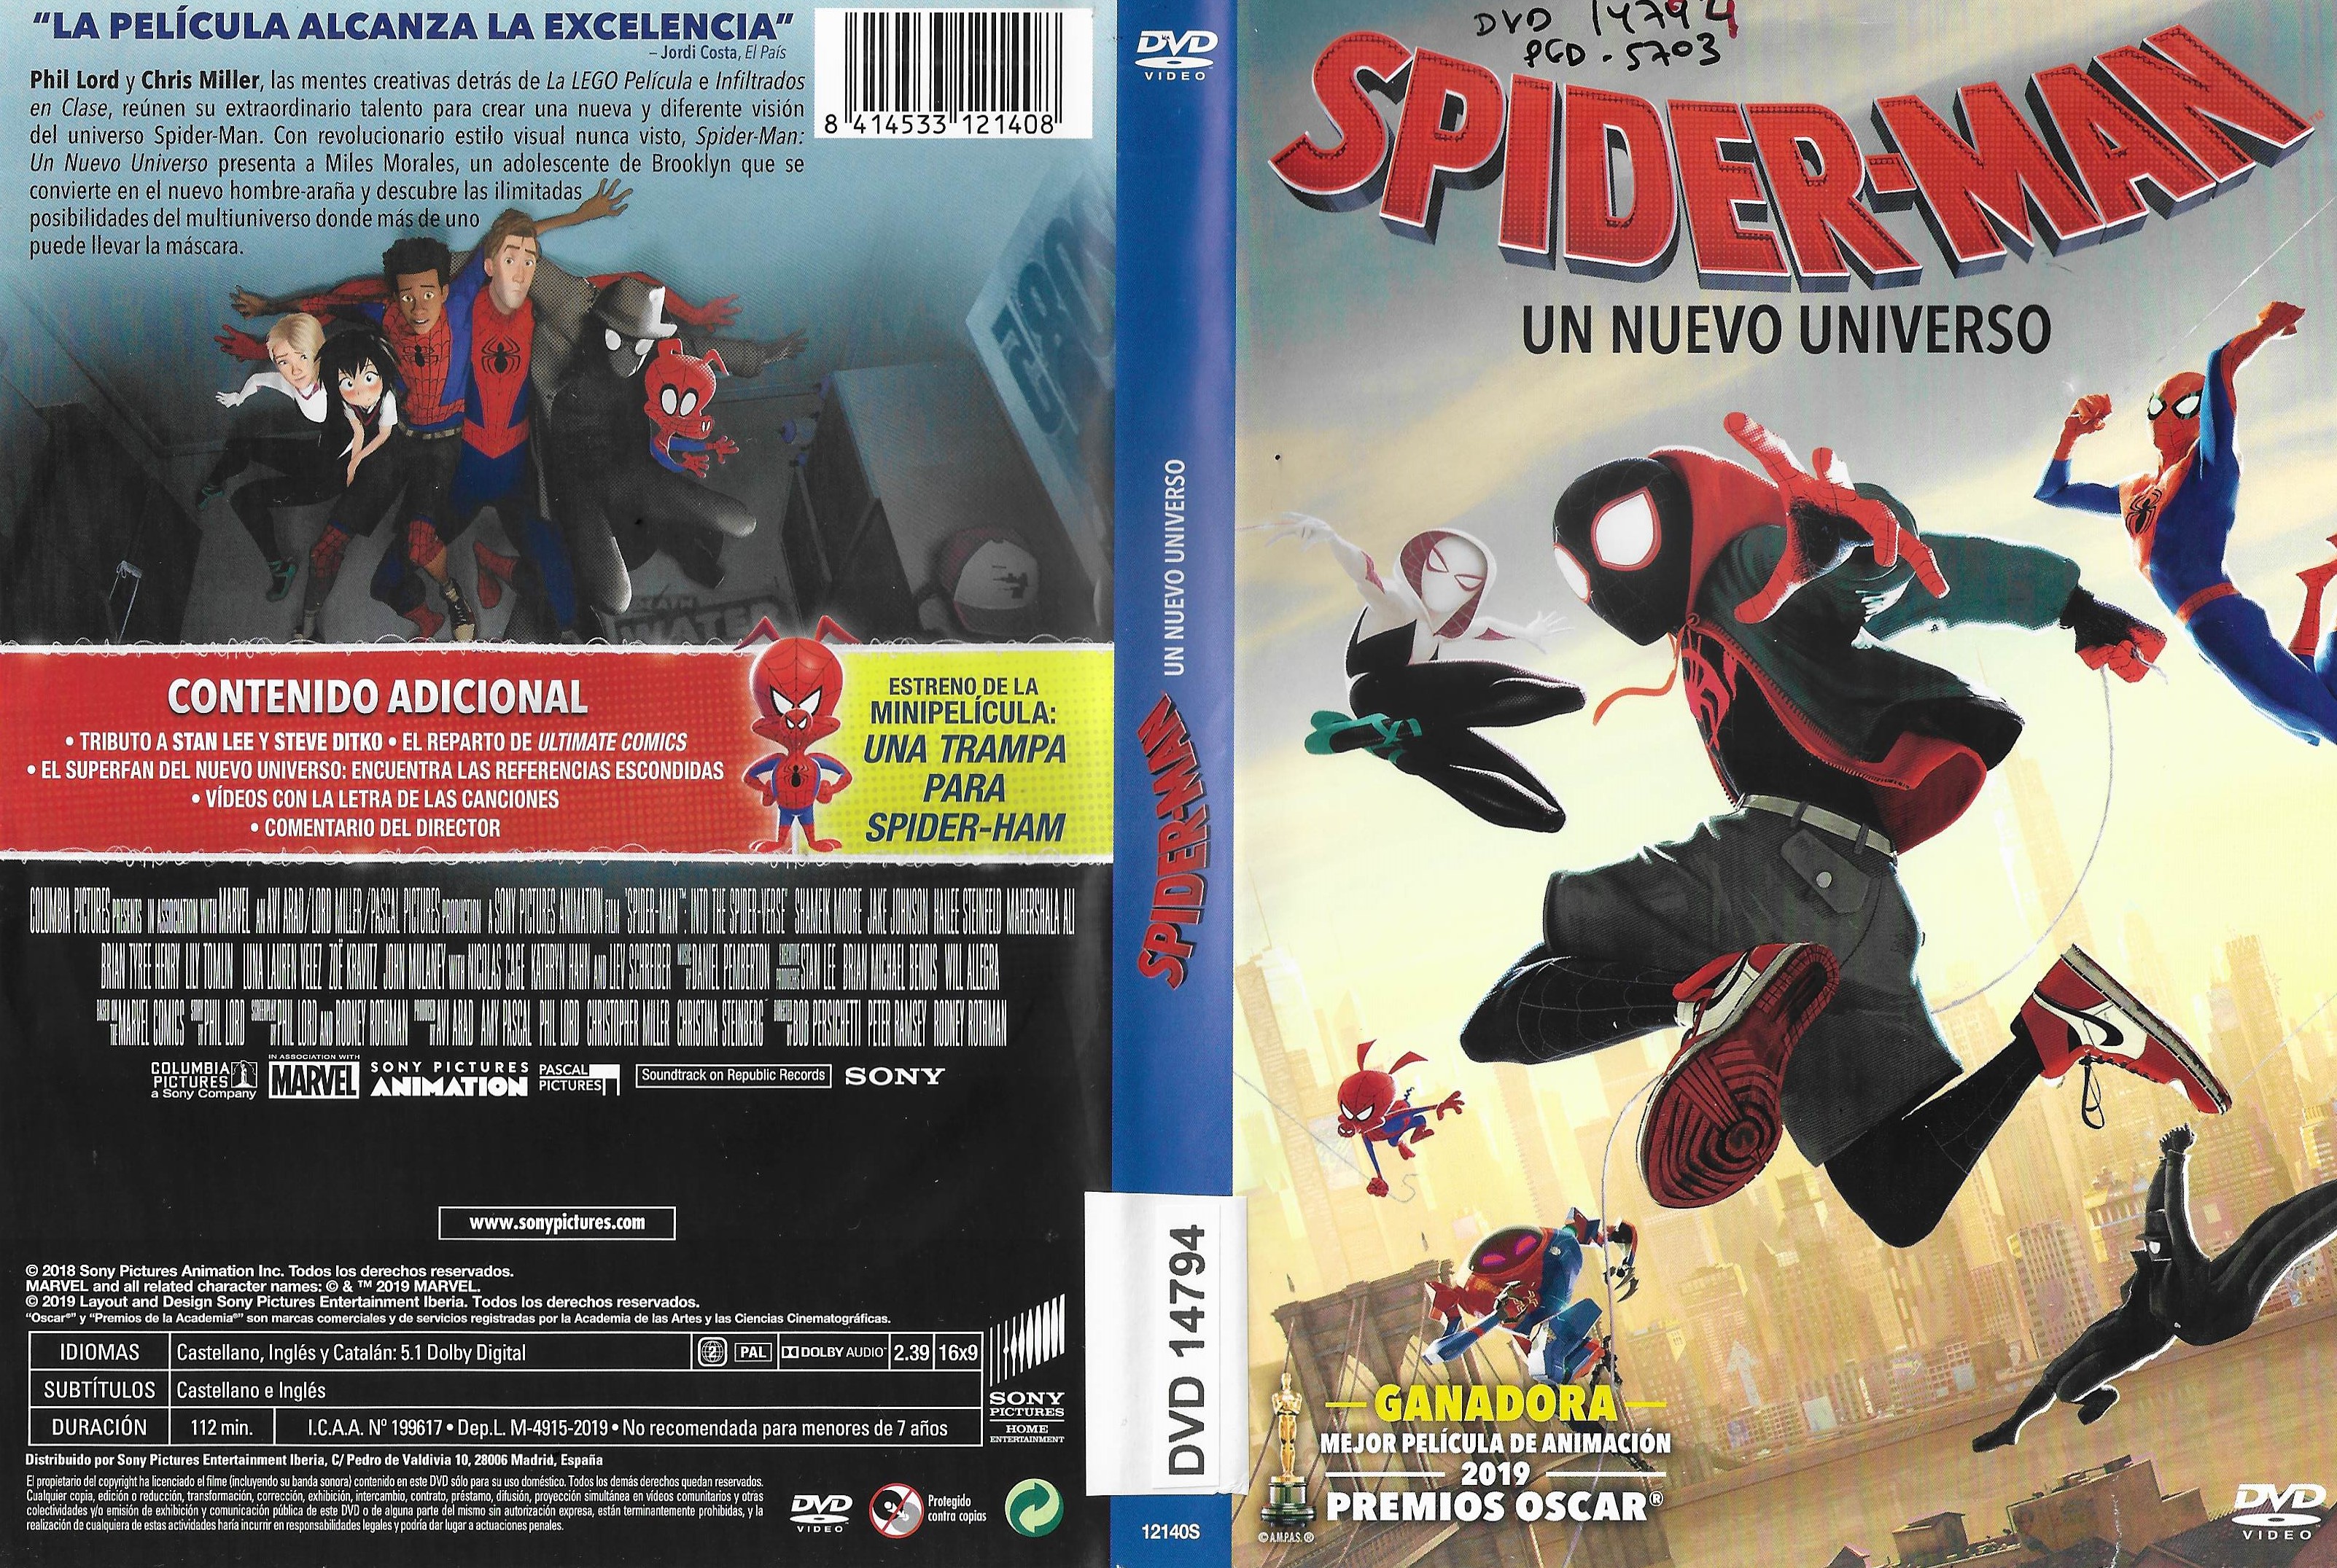 Spider-Man un nuevo universo - Universidad de Sevilla